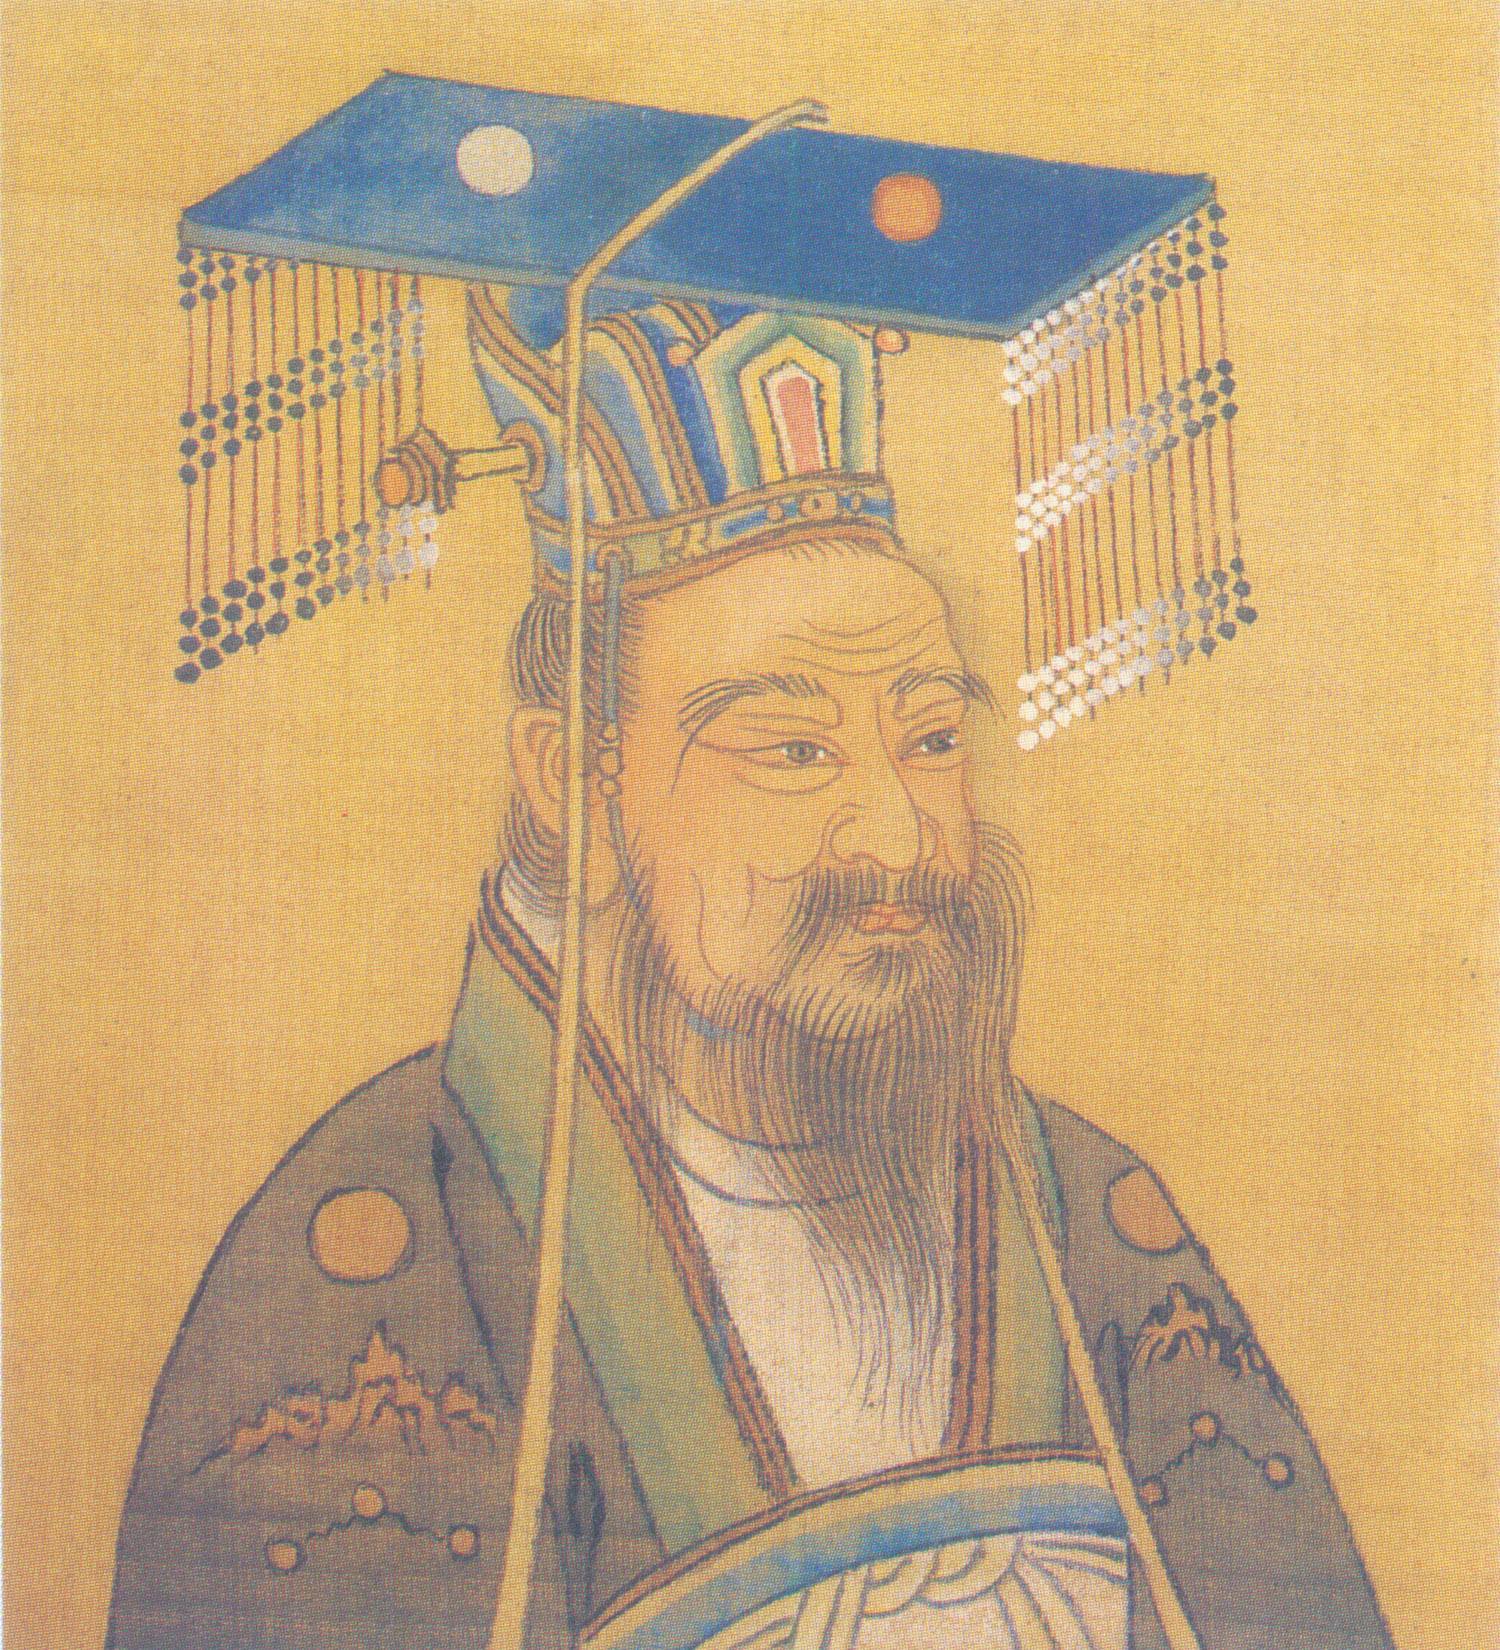 第四位,汉武帝刘彻,开疆扩土发展文教革新制度,对统一多民族国家作出